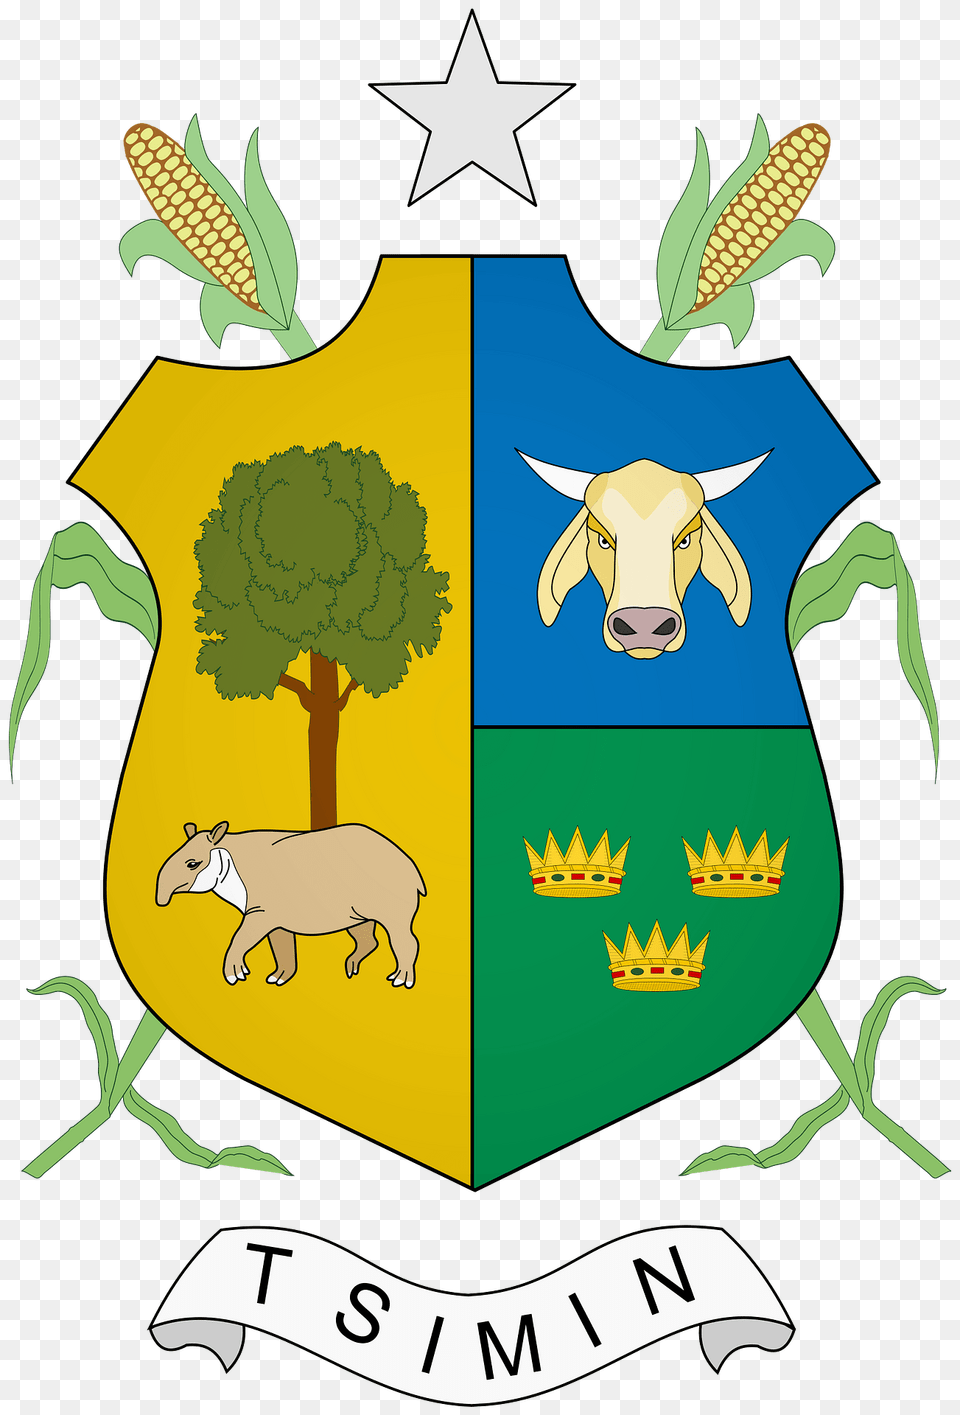 Escudo De Tizimn Clipart, Animal, Mammal, Pig, Armor Free Png